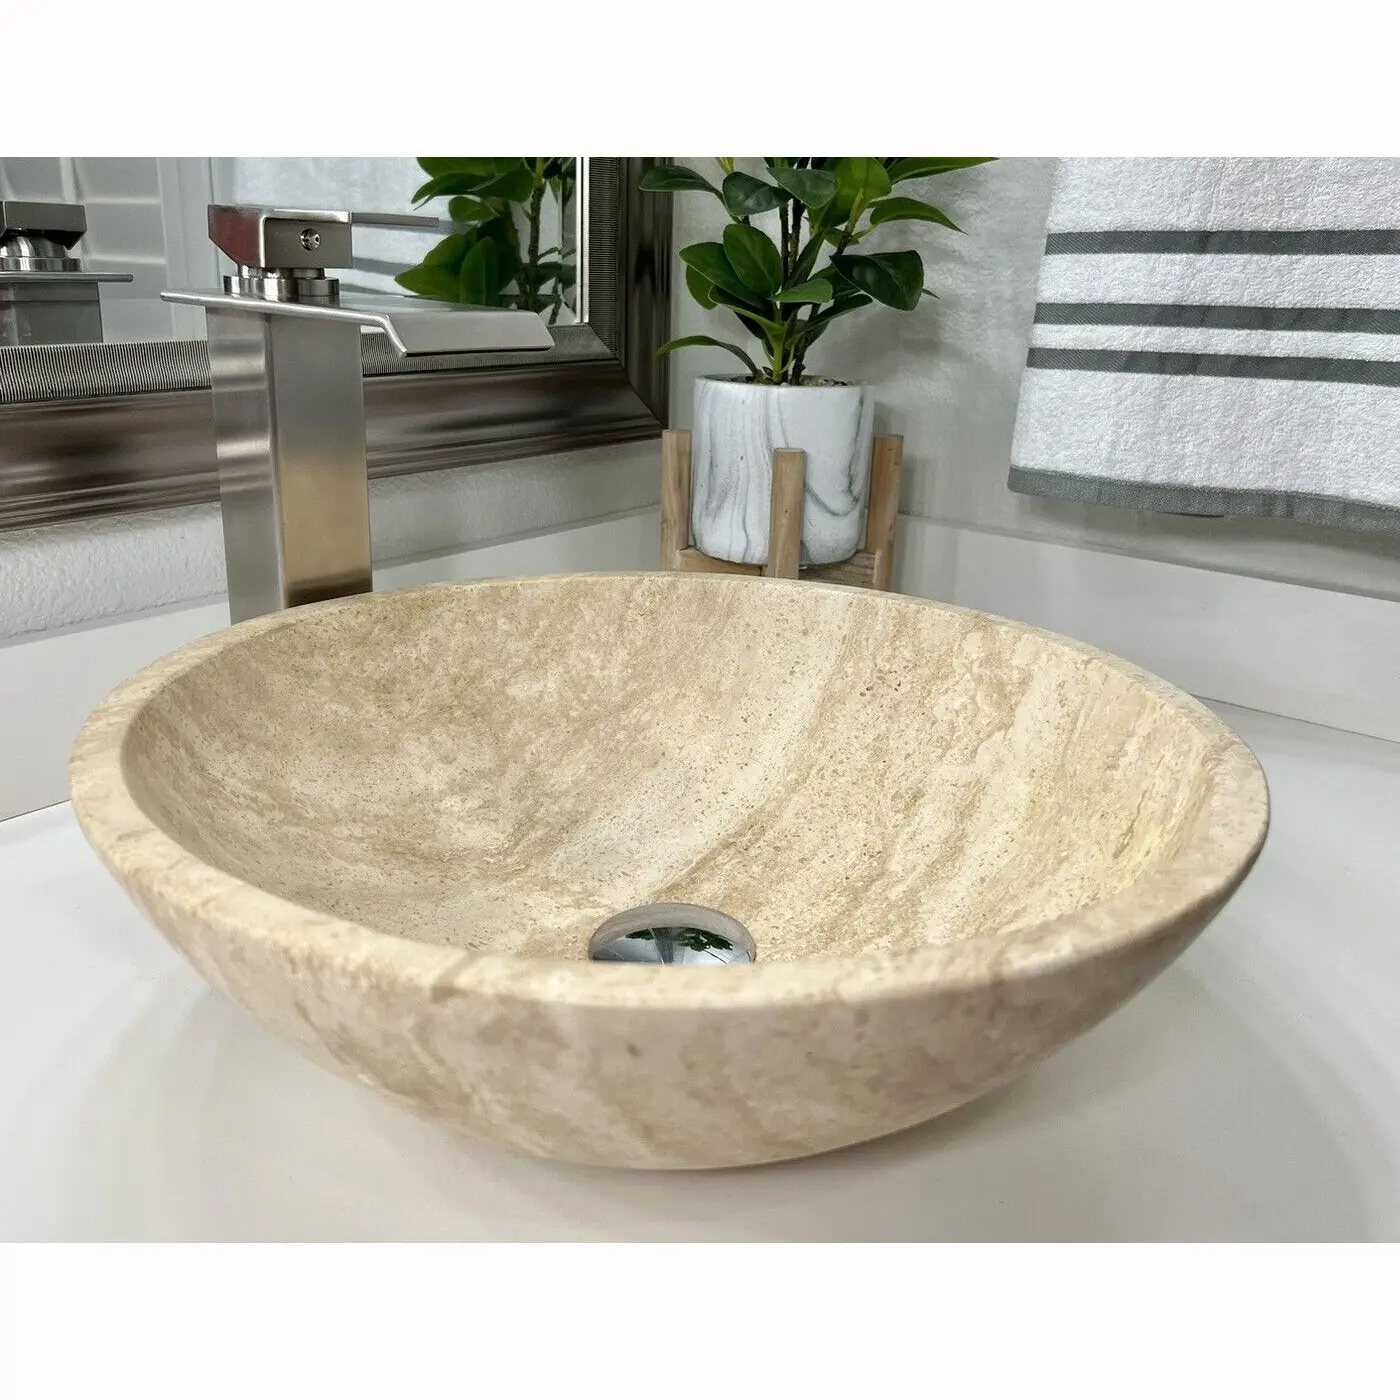 Round Honed Travertine Vessel Sink Travertine Wash Basin Modern Marble Bathroom Sink